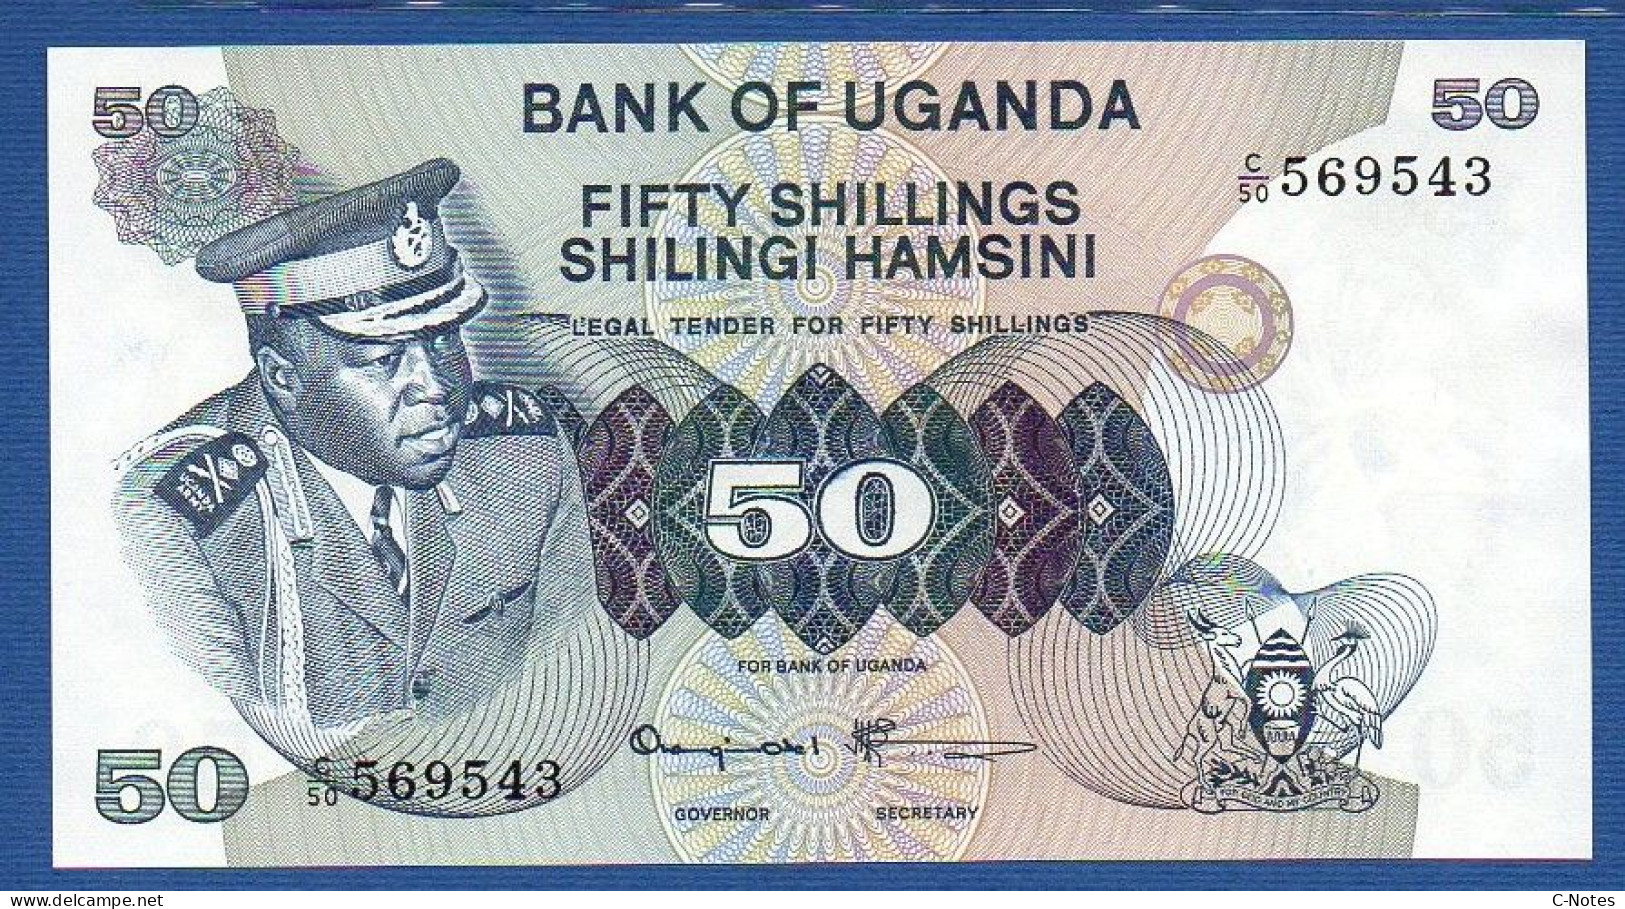 UGANDA - P. 8c – 50 SHILLINGS Nd (1973) UNC, S/n C/50 569543 - Uganda